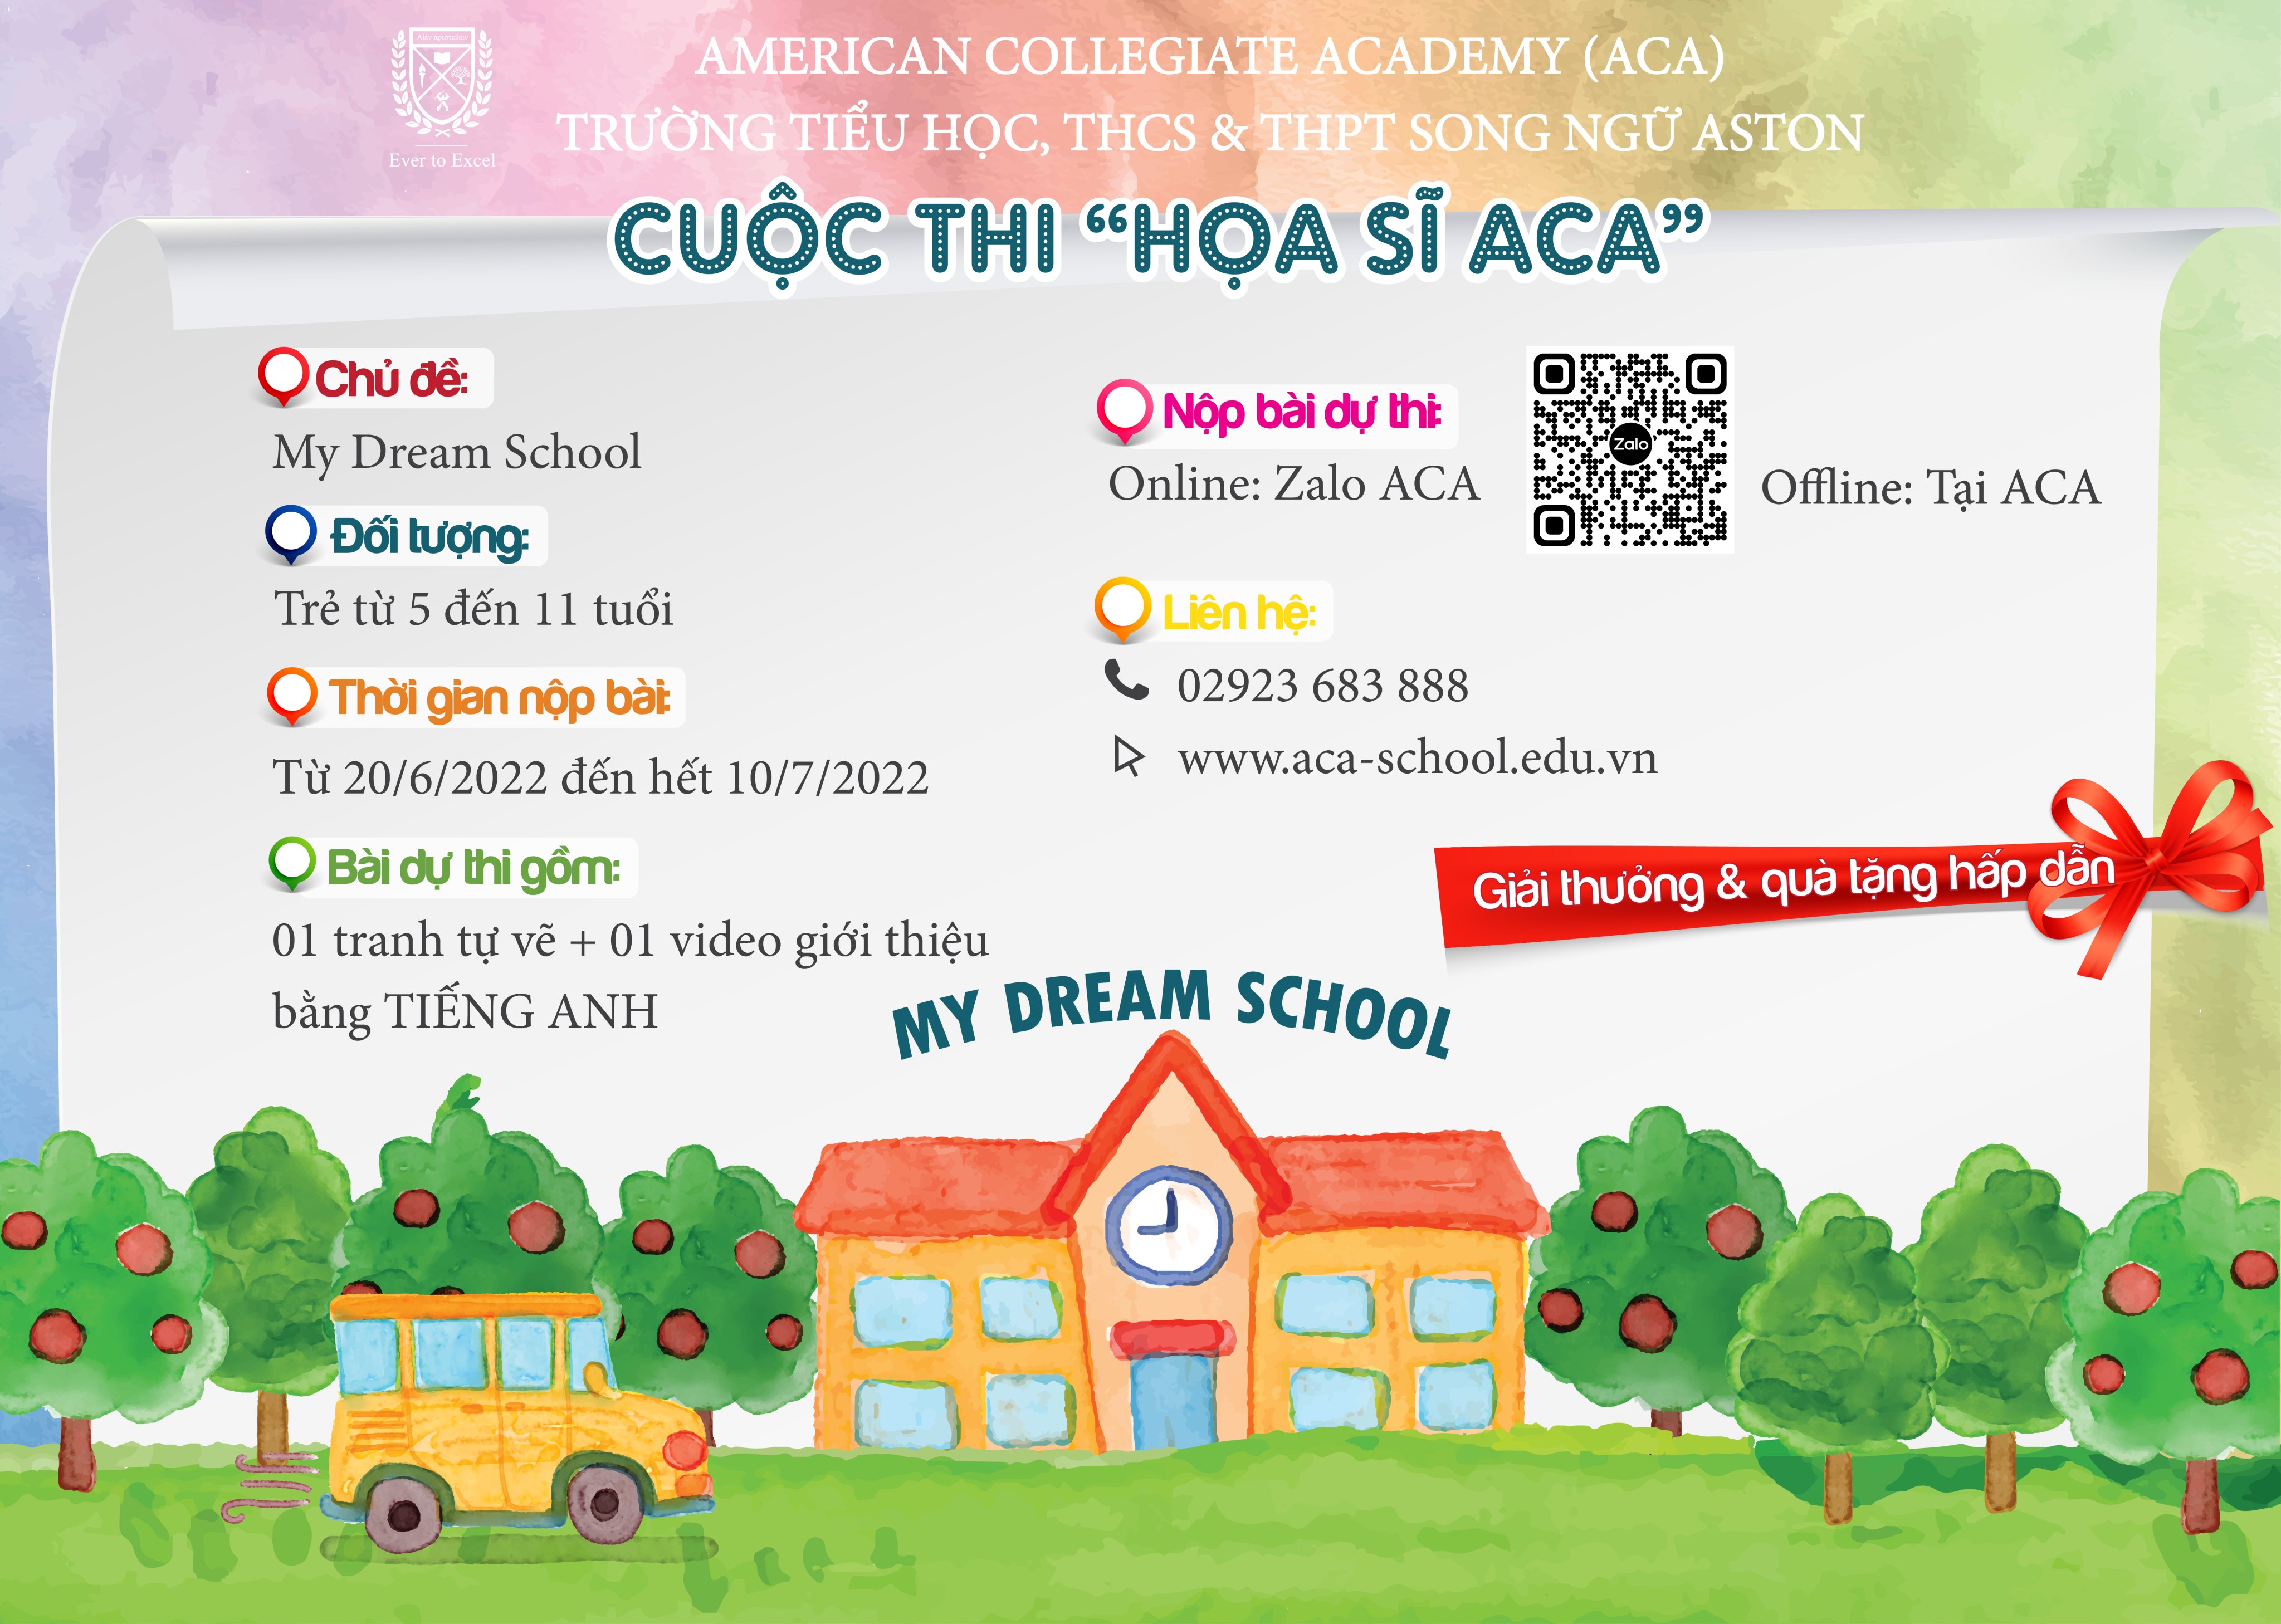 Thông báo Trường Tiểu học, THCS & THPT Song ngữ Aston (ACA) Tổ chức cuộc thi “Họa sĩ ACA” MY DREAM SCHOOL